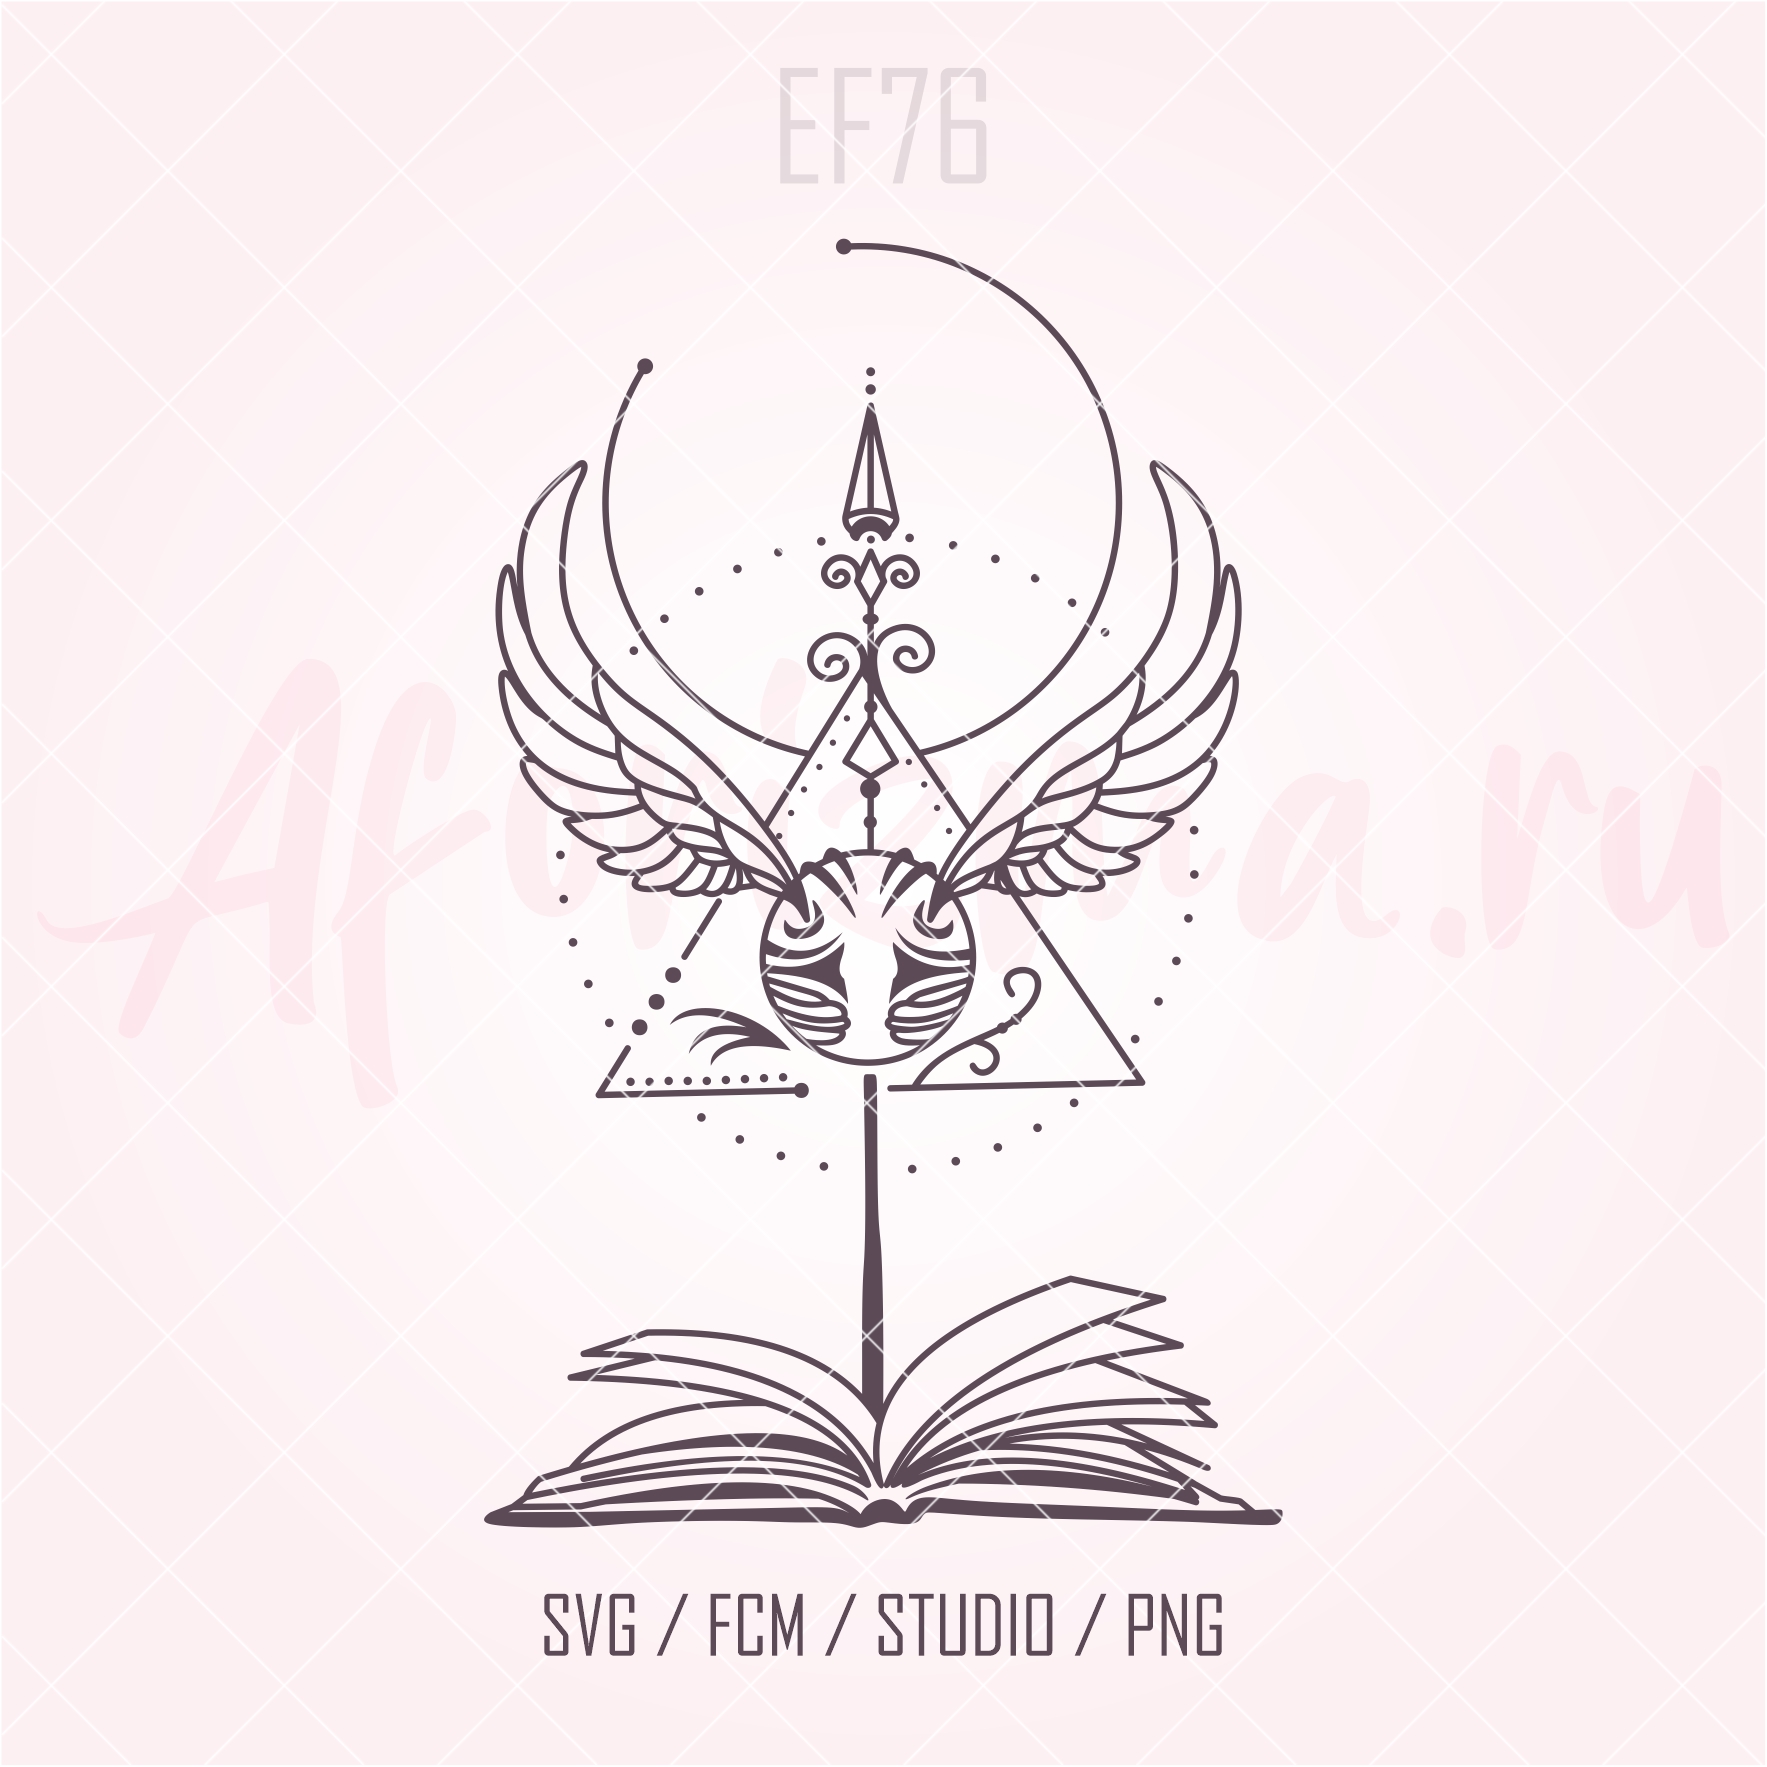 (EF76) Символ Гарри